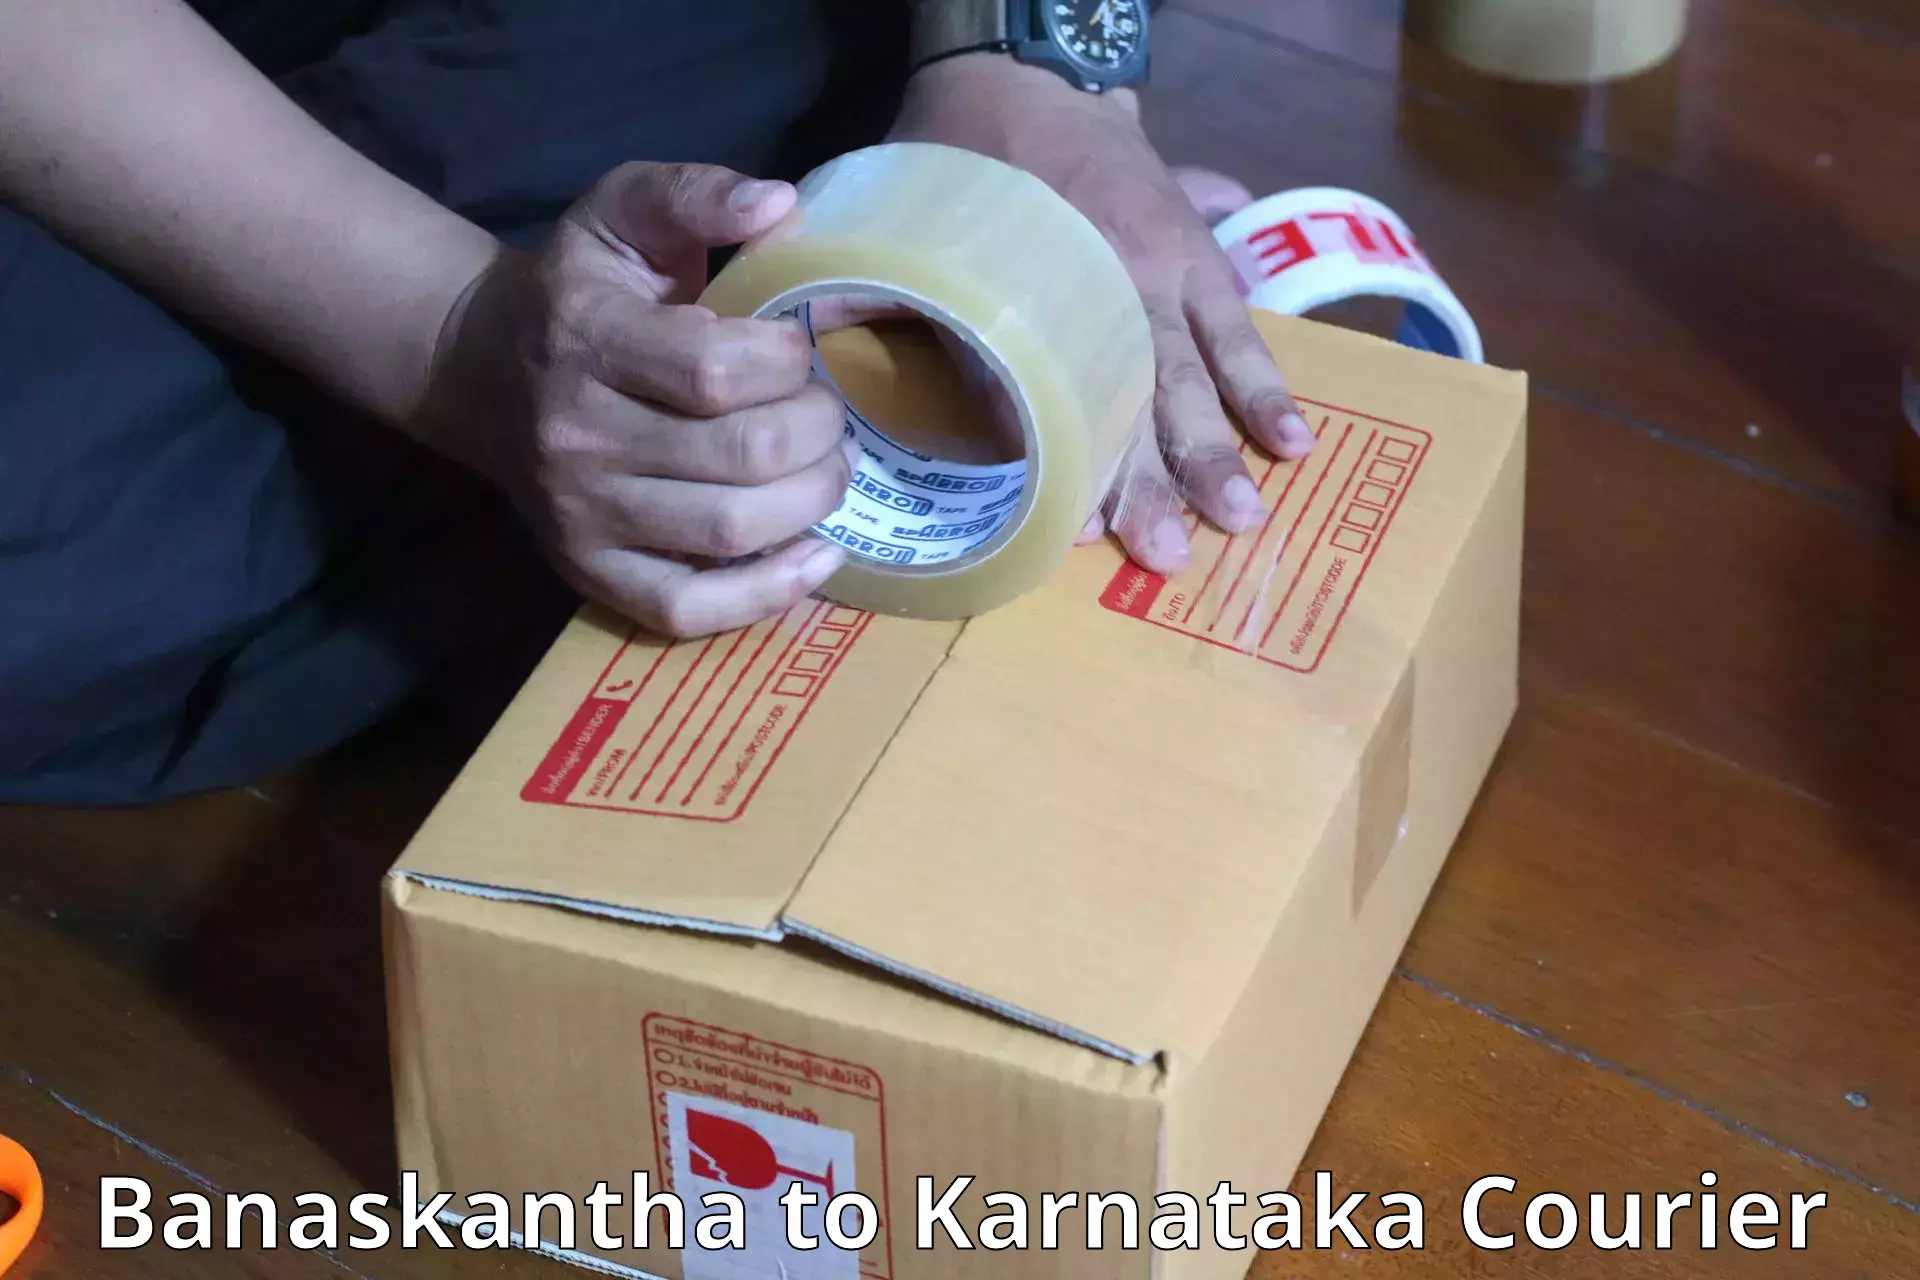 Baggage transport scheduler Banaskantha to Karnataka